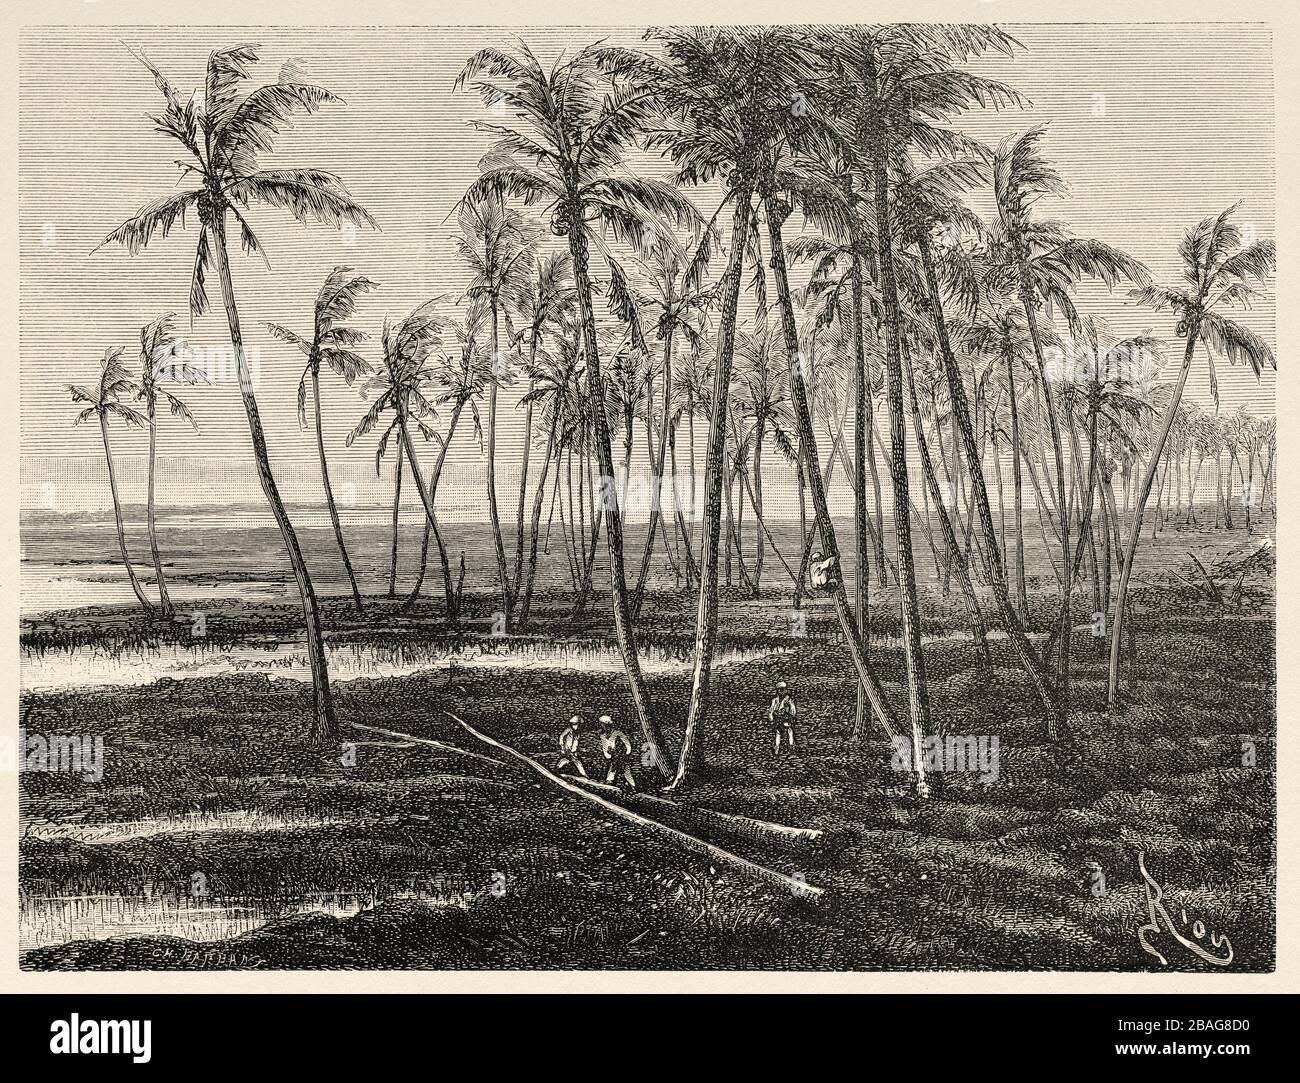 Vista panoramica delle palme sulla costa dell'isola delle Hawaii. Hawaii, Stati Uniti. Gita alle Isole Hawaiiane 1855 di Charles de Varigny Foto Stock